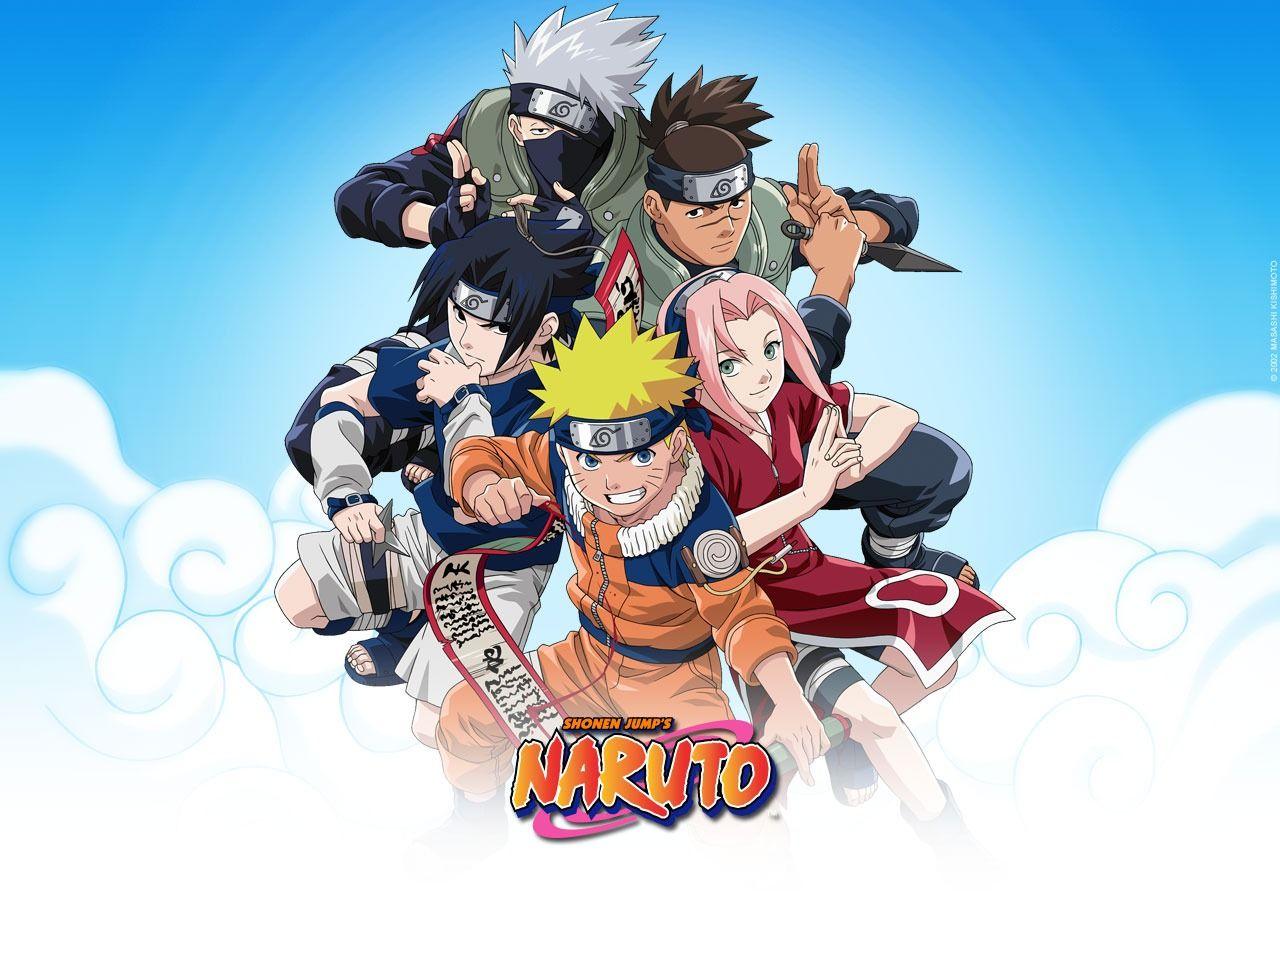 1280x960 Hình nền Naruto Hình nền Naruto Anime Hoạt hình ở định dạng jpg